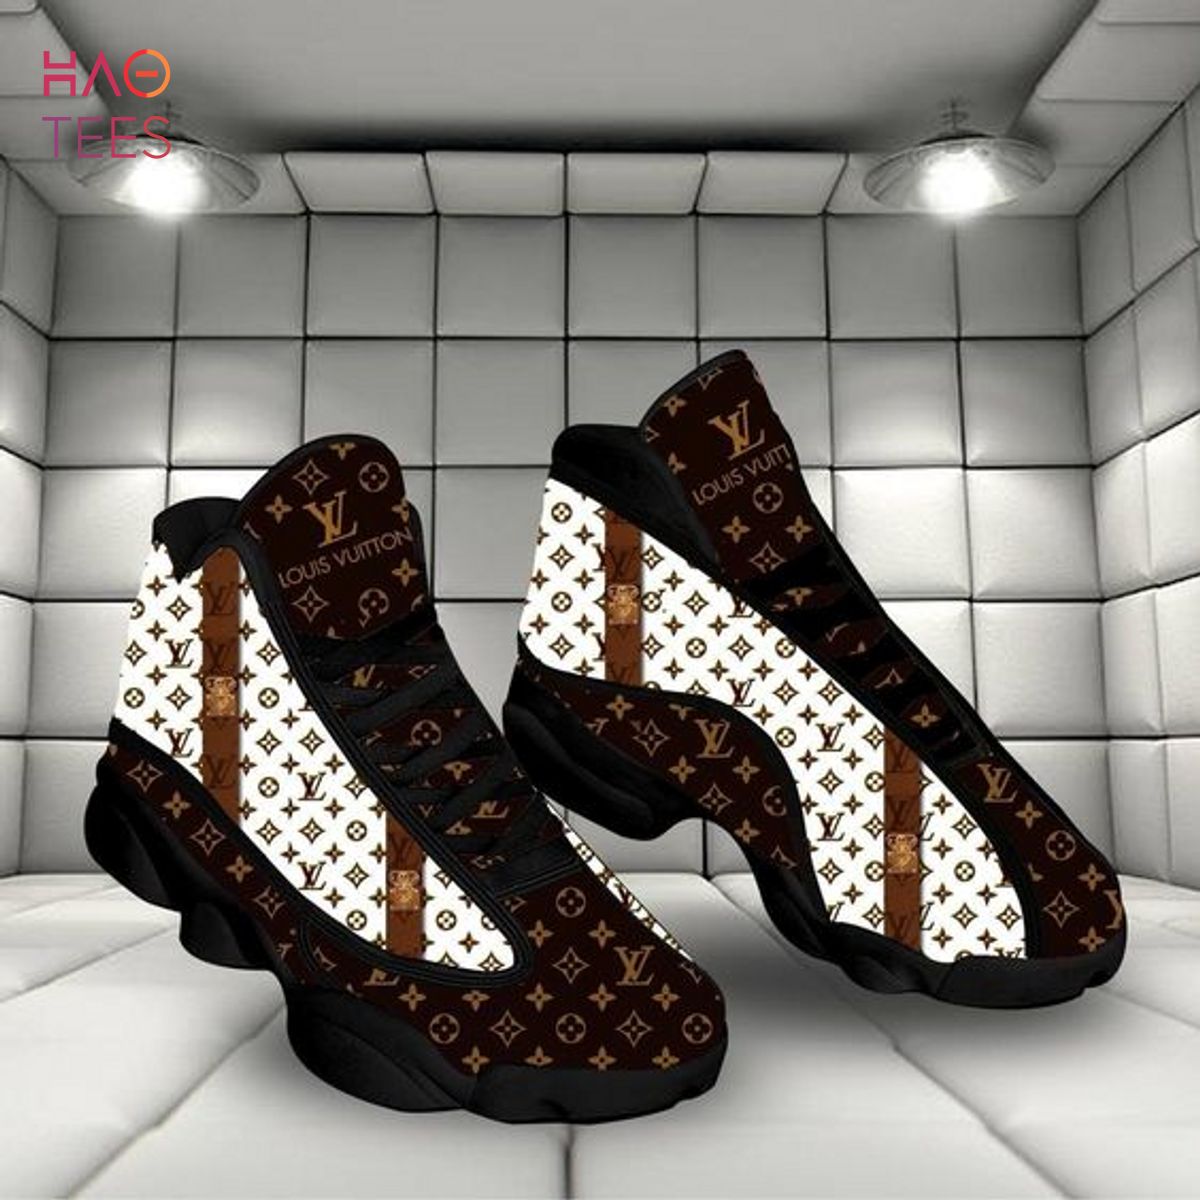 Louis Vuitton Paris x Air Jordan 13 Shoes POD Design